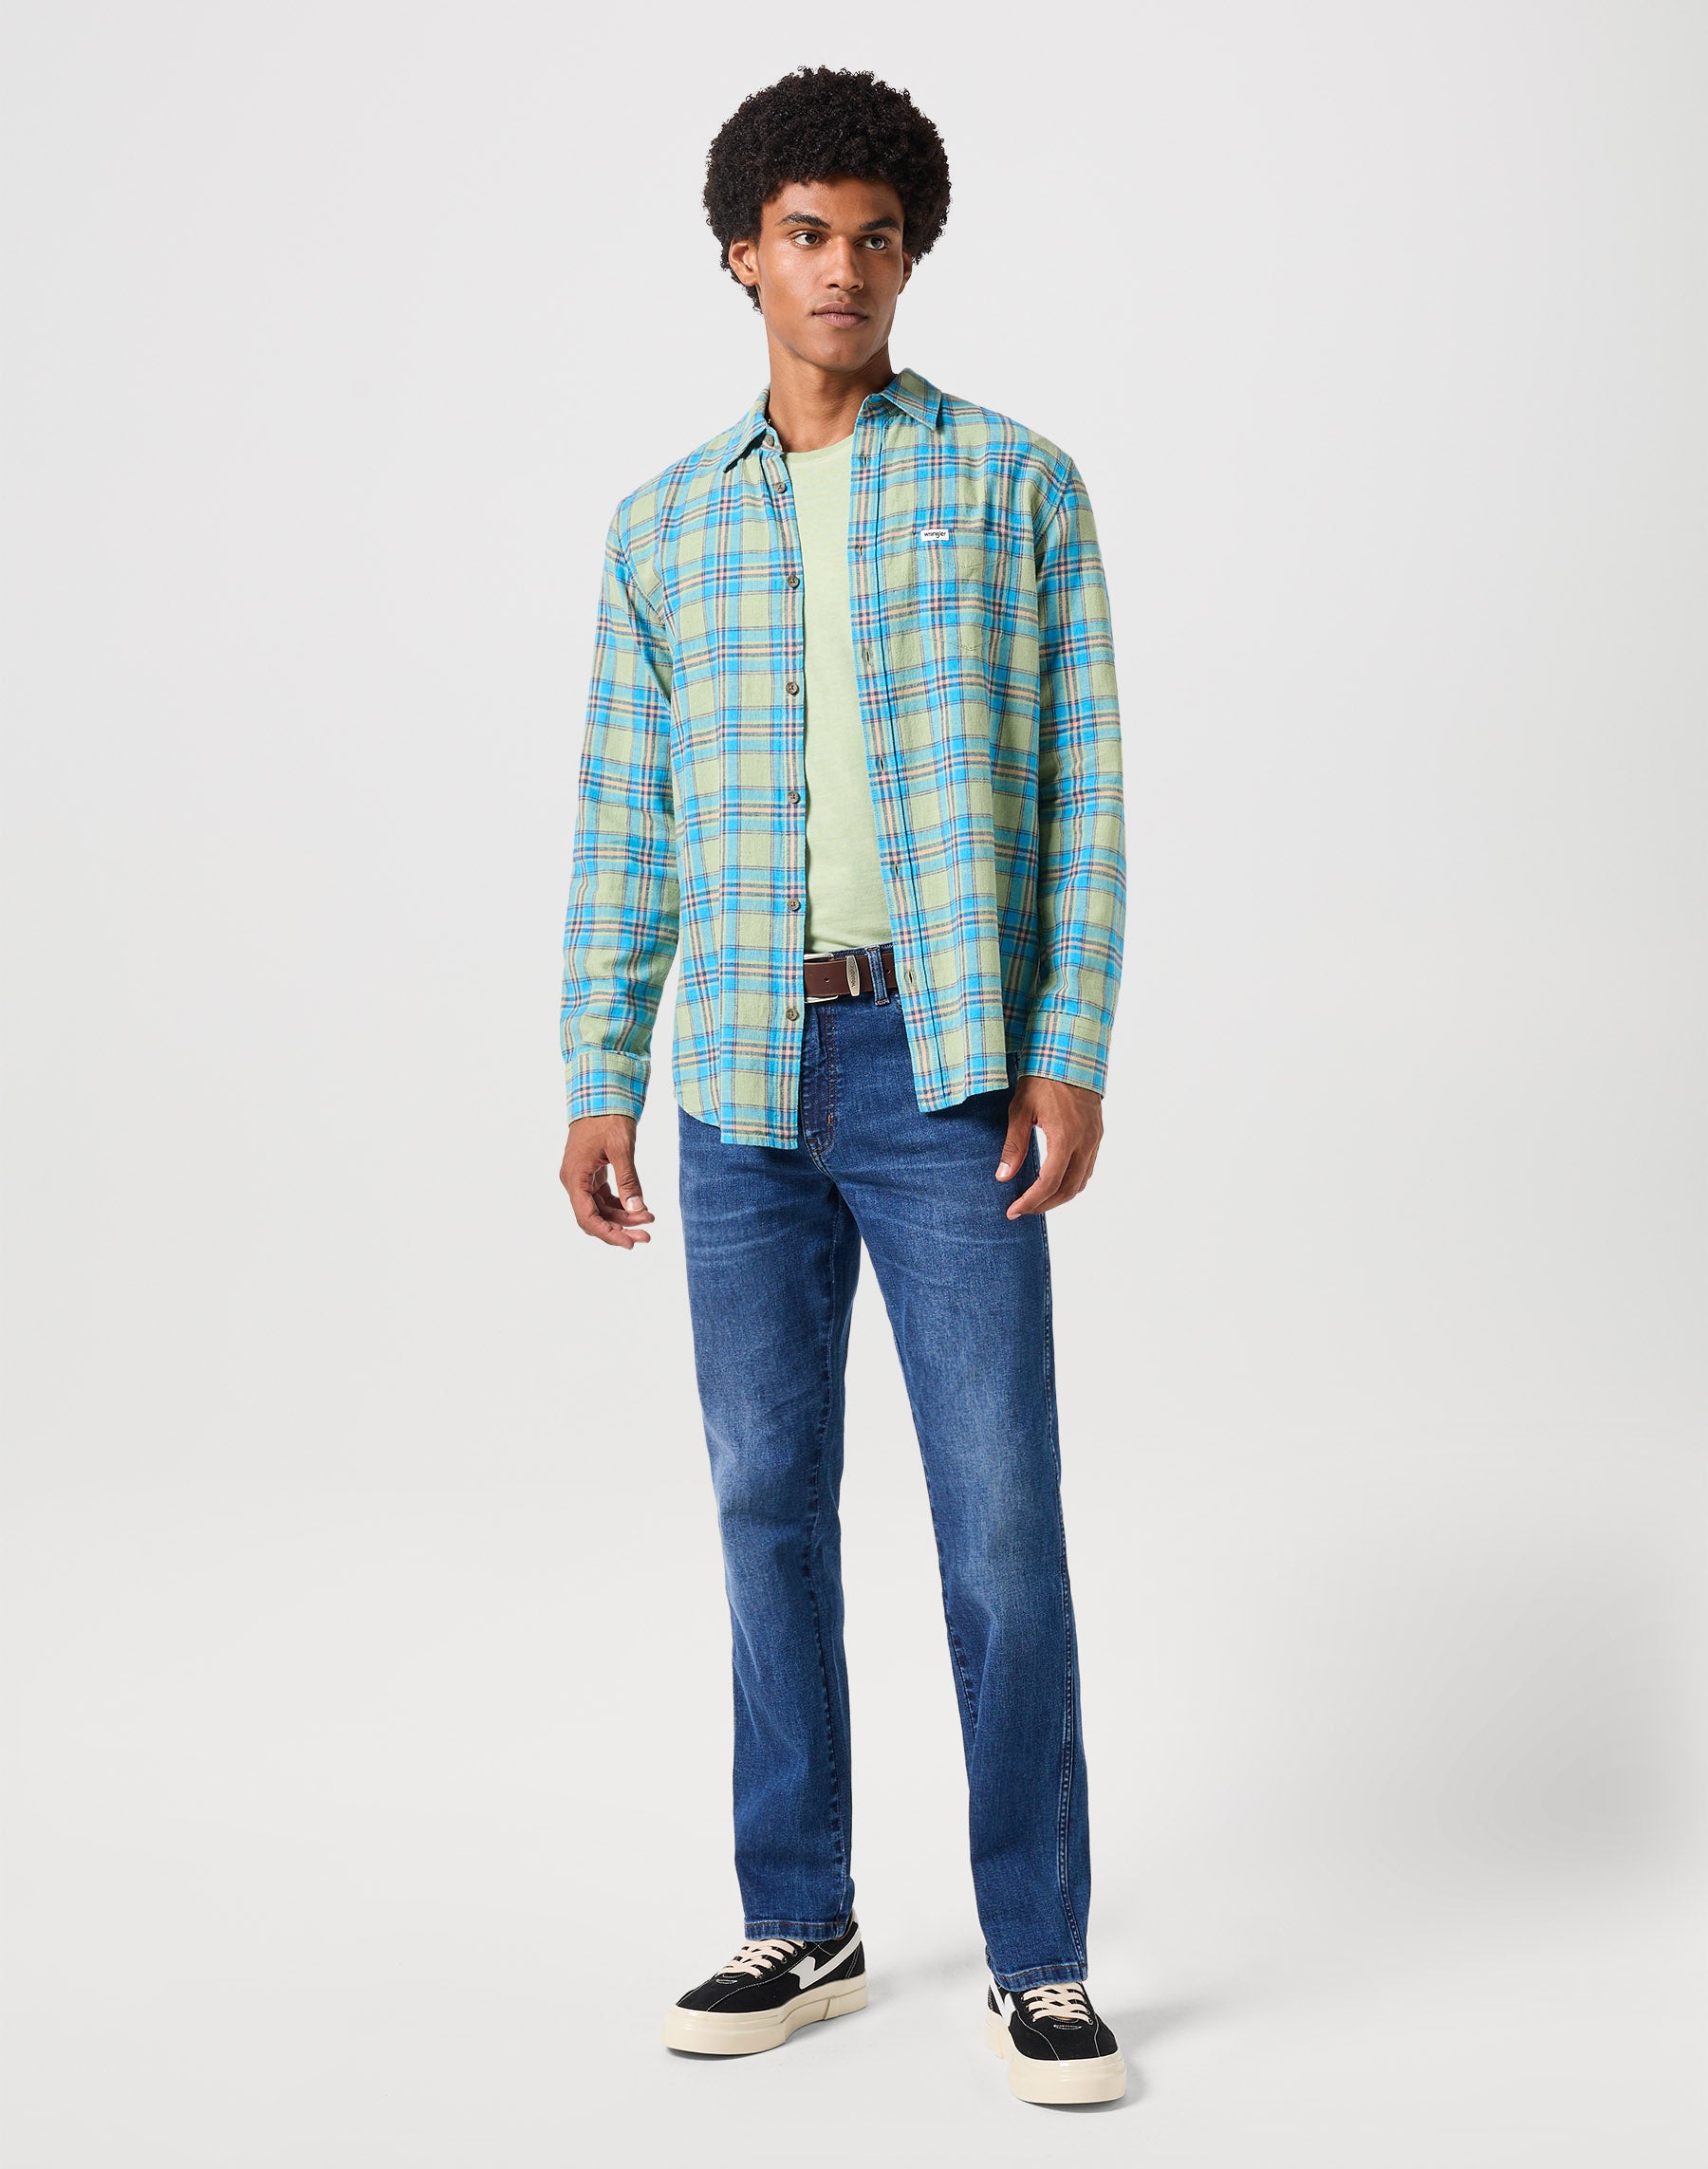 Langarm One Pocket Shirt in Reseda Hemden Wrangler   